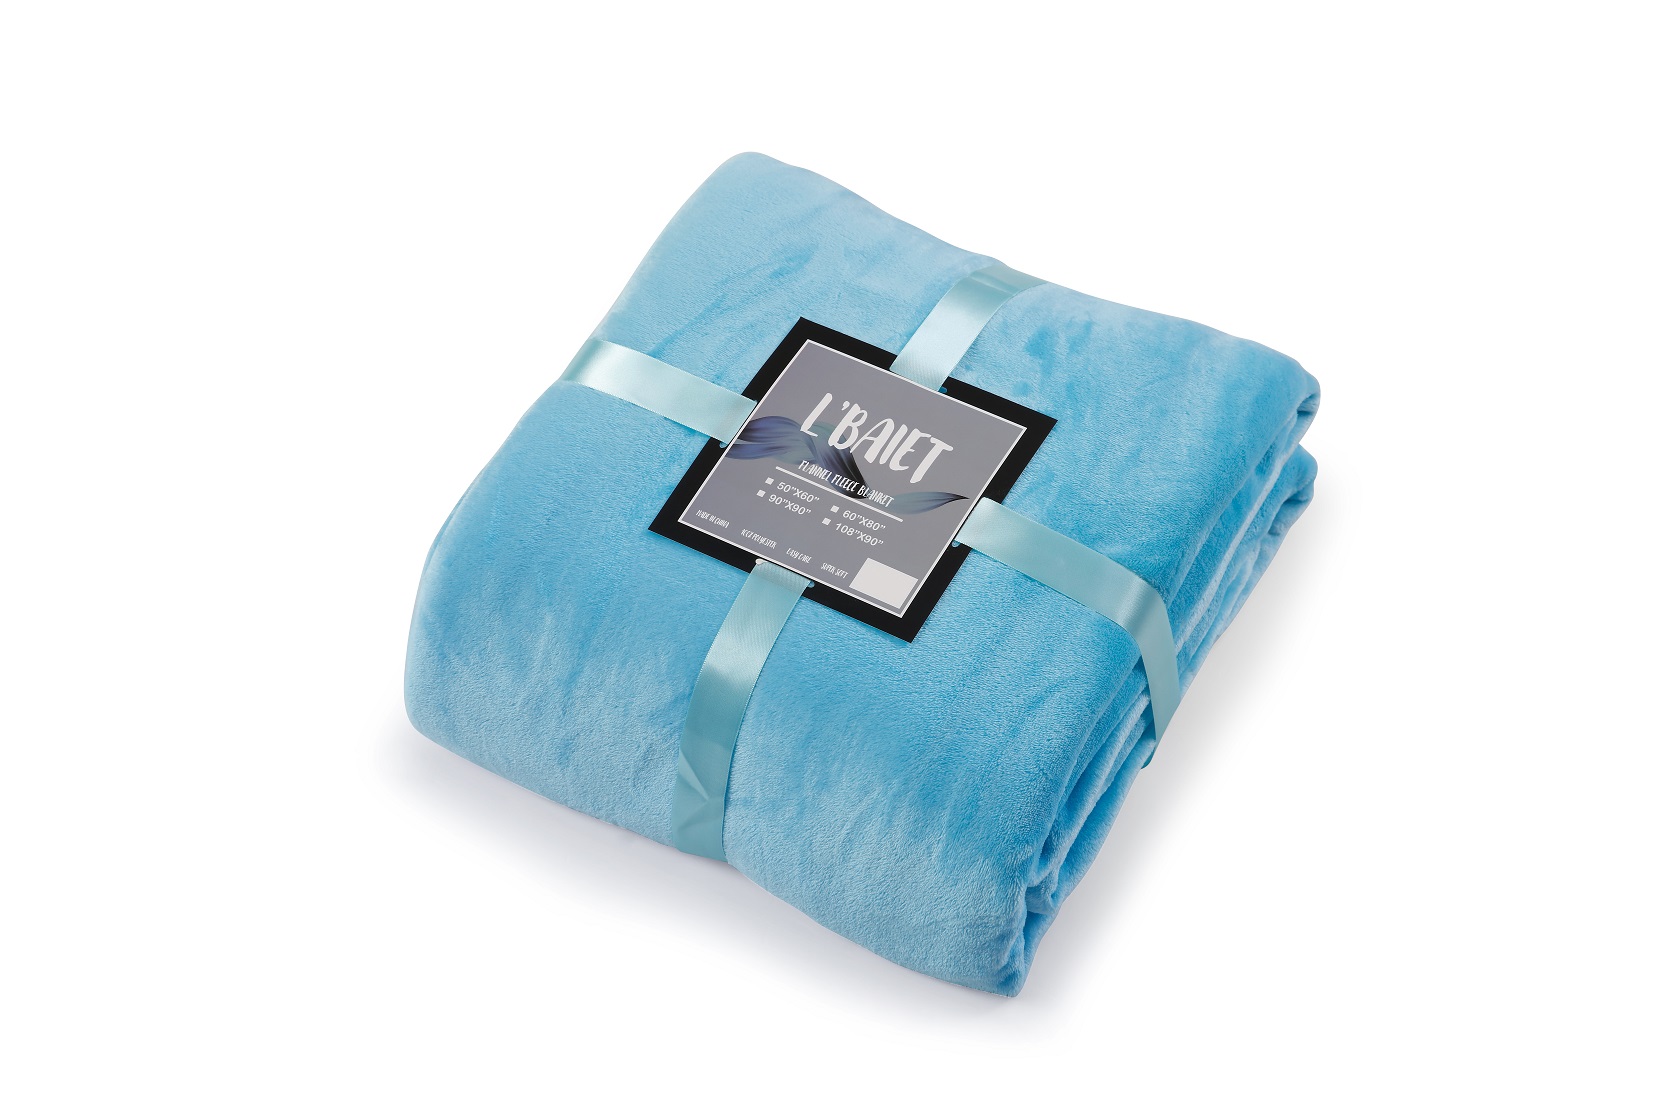 NEW Lightweight Light Blue Fleece Throws Blankets approx size 50" x 60" 2